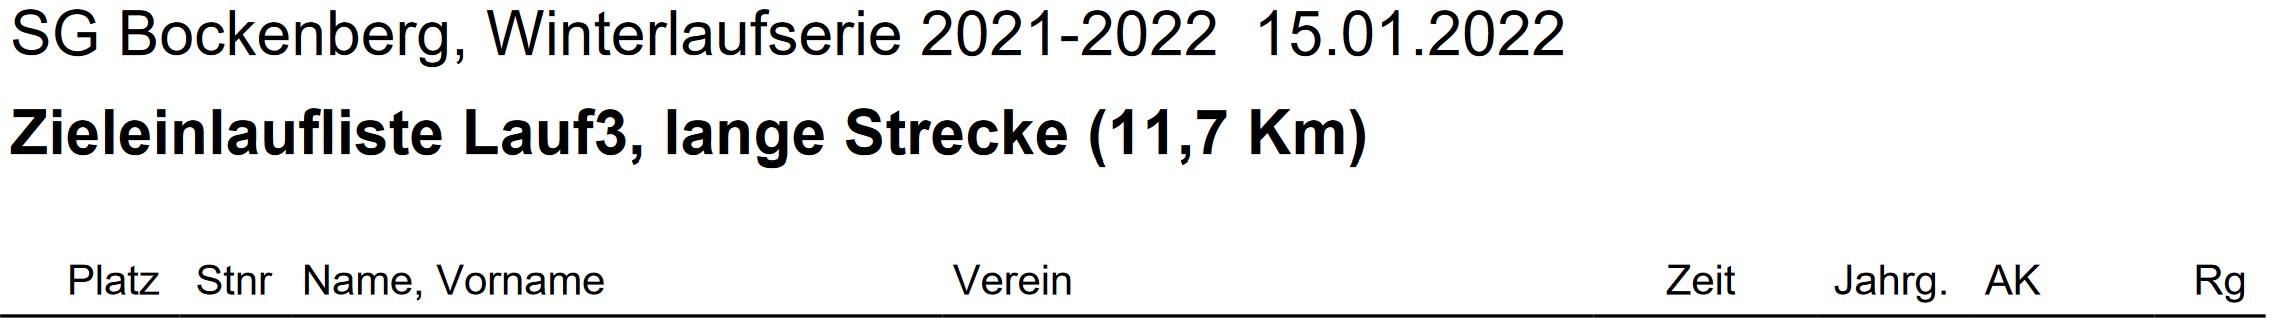 Bockenberg 2021 Lauf3 Ergebnis Teil1